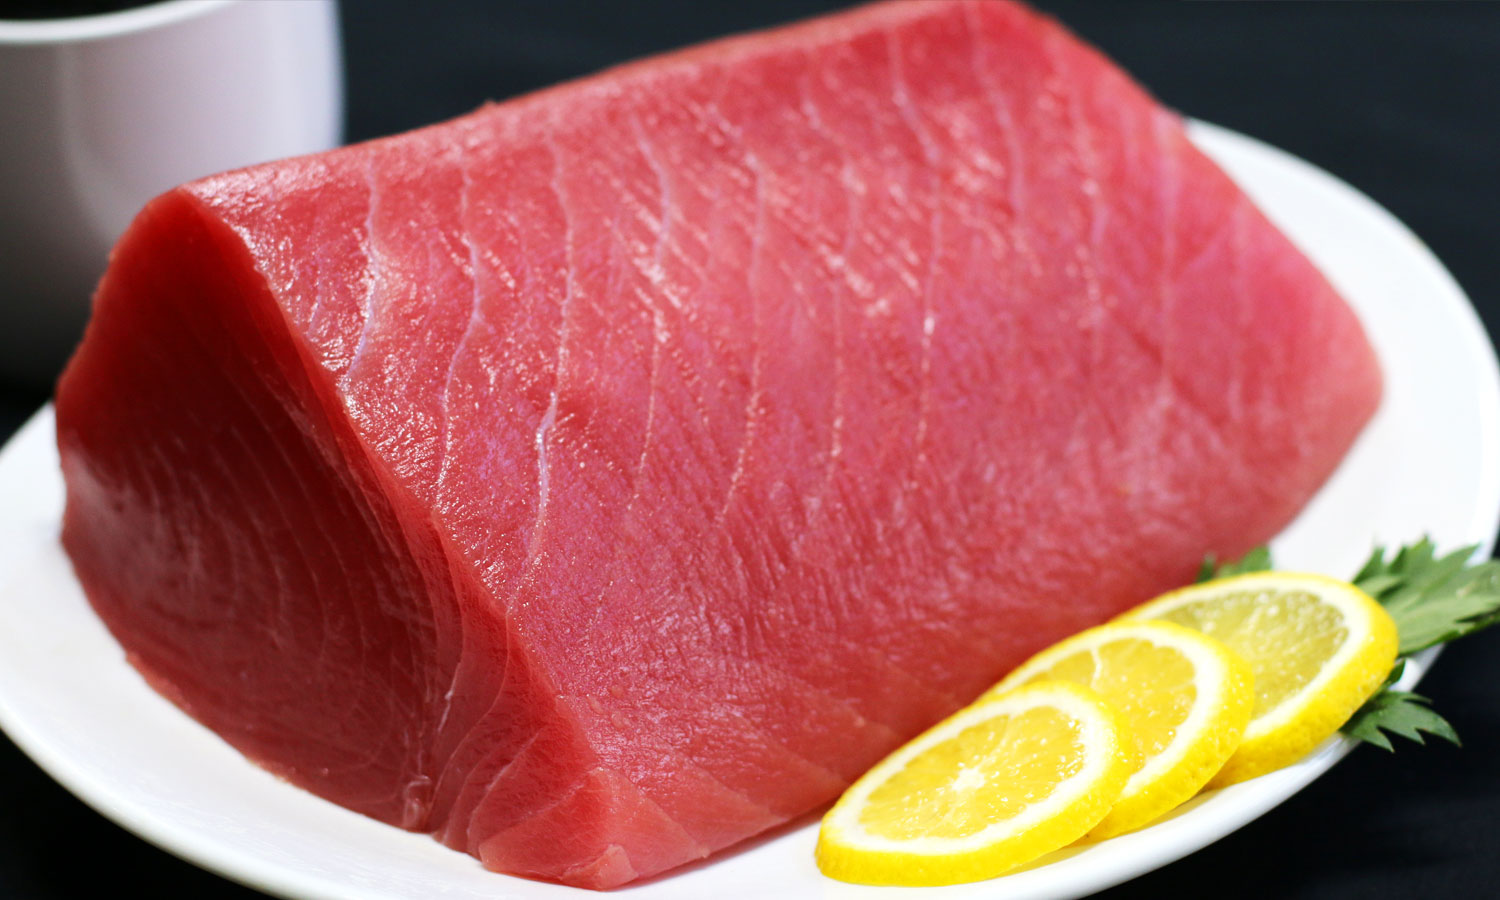 Yellowfin Tuna Loin